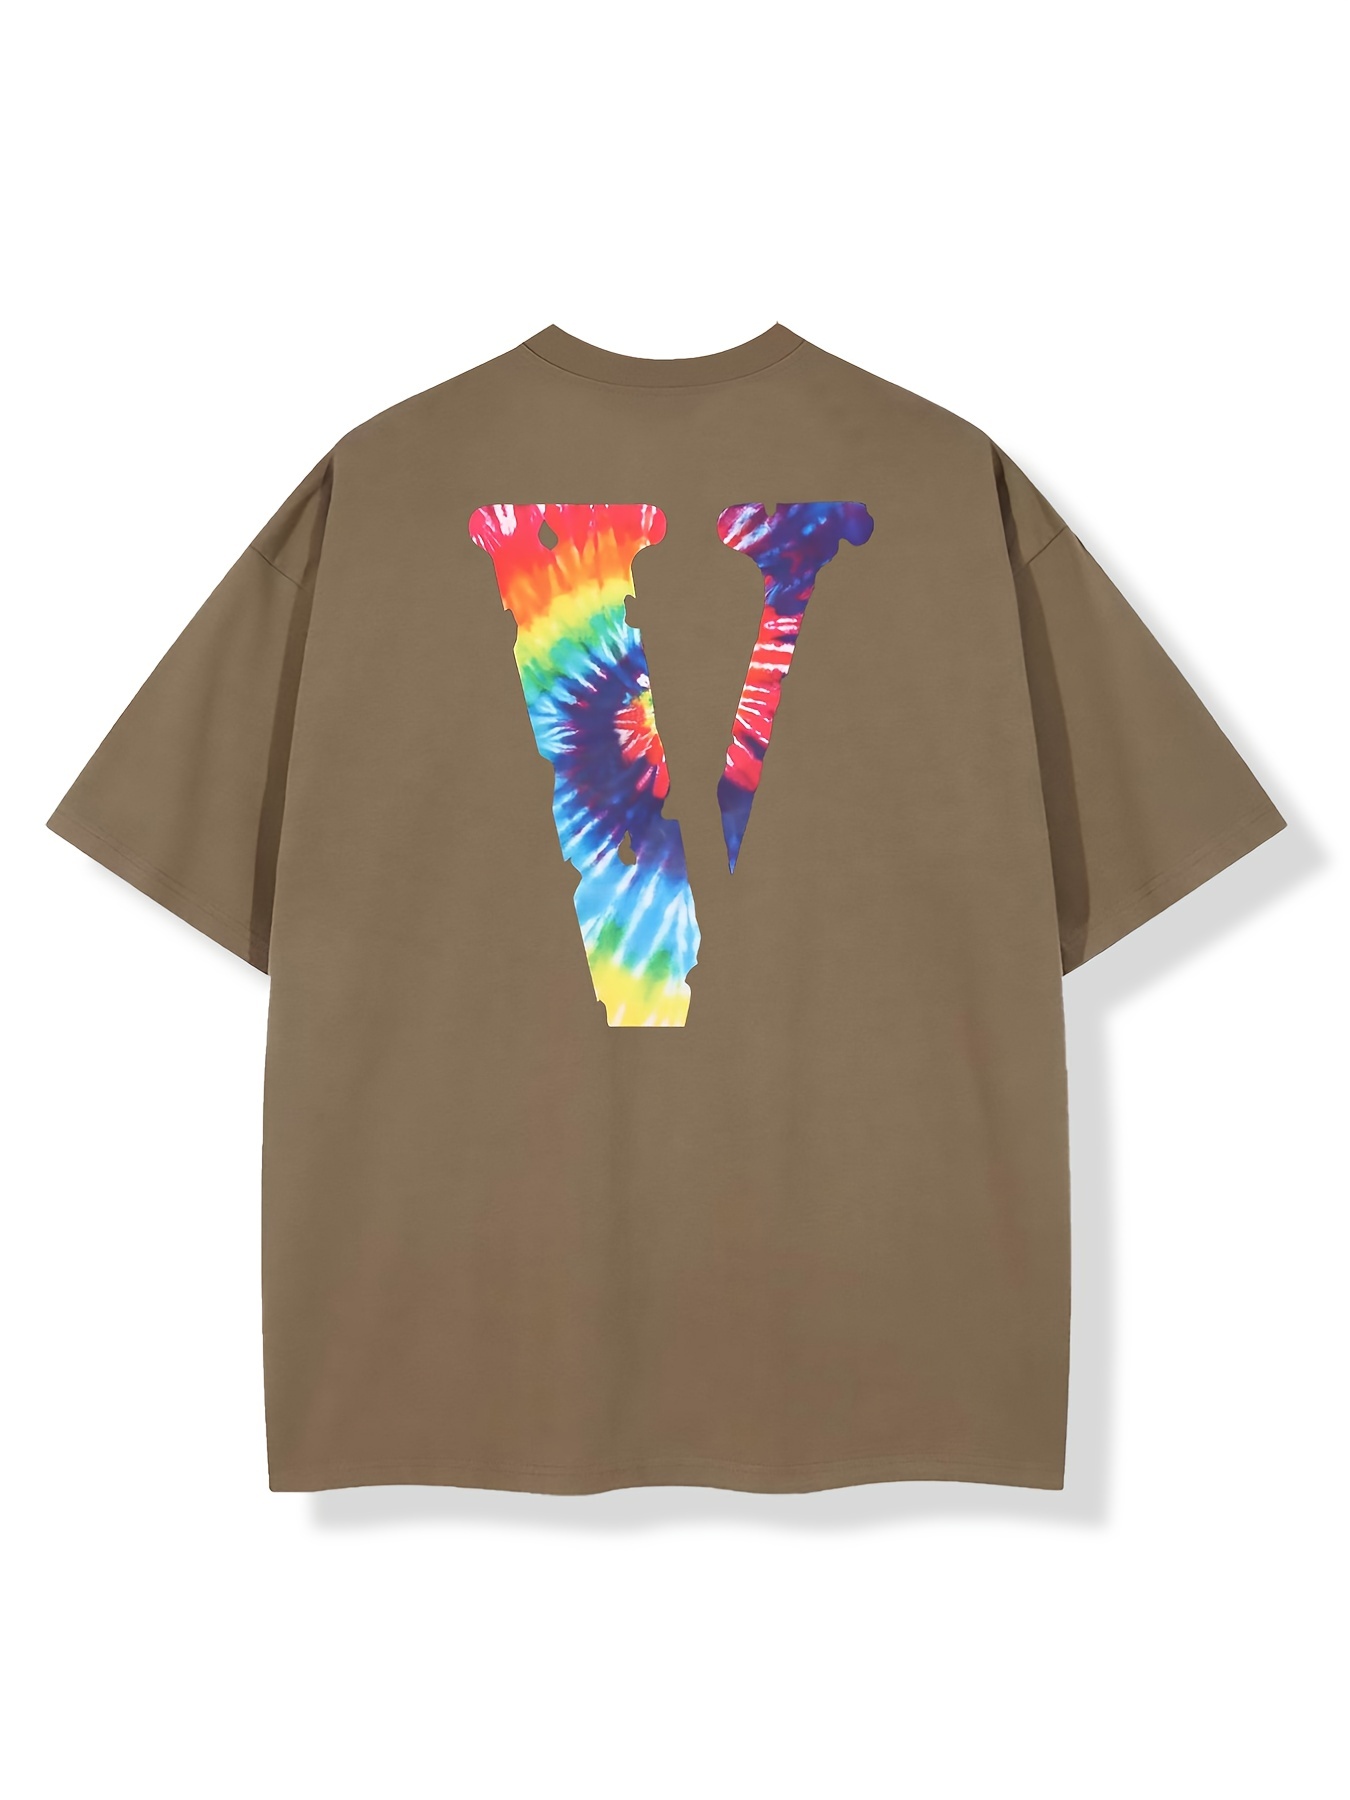 louis vuitton t-shirt rainbow printed